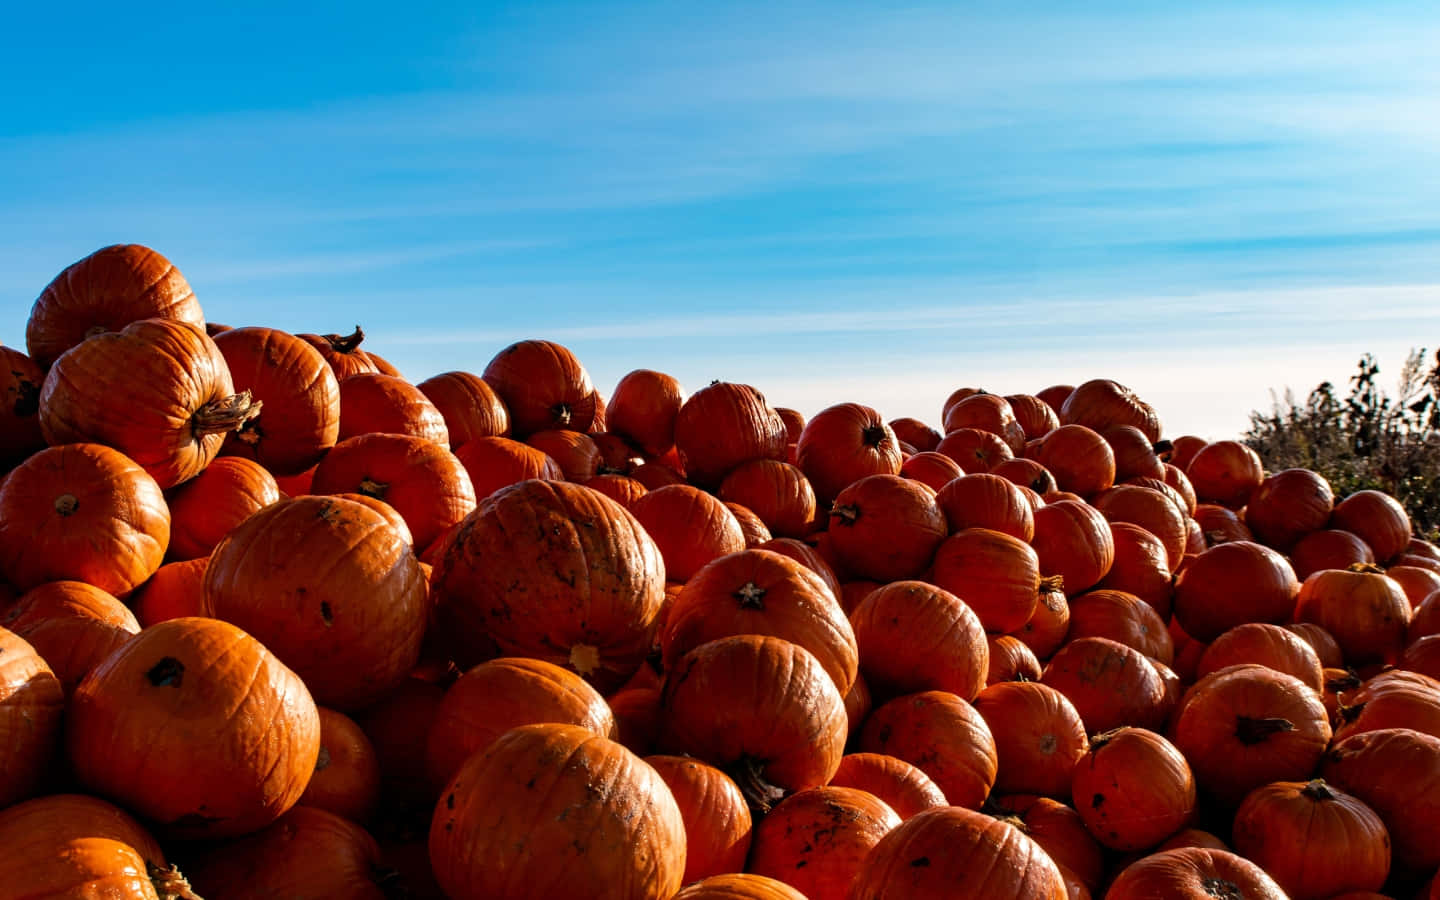 Festive Fall Pumpkin Display